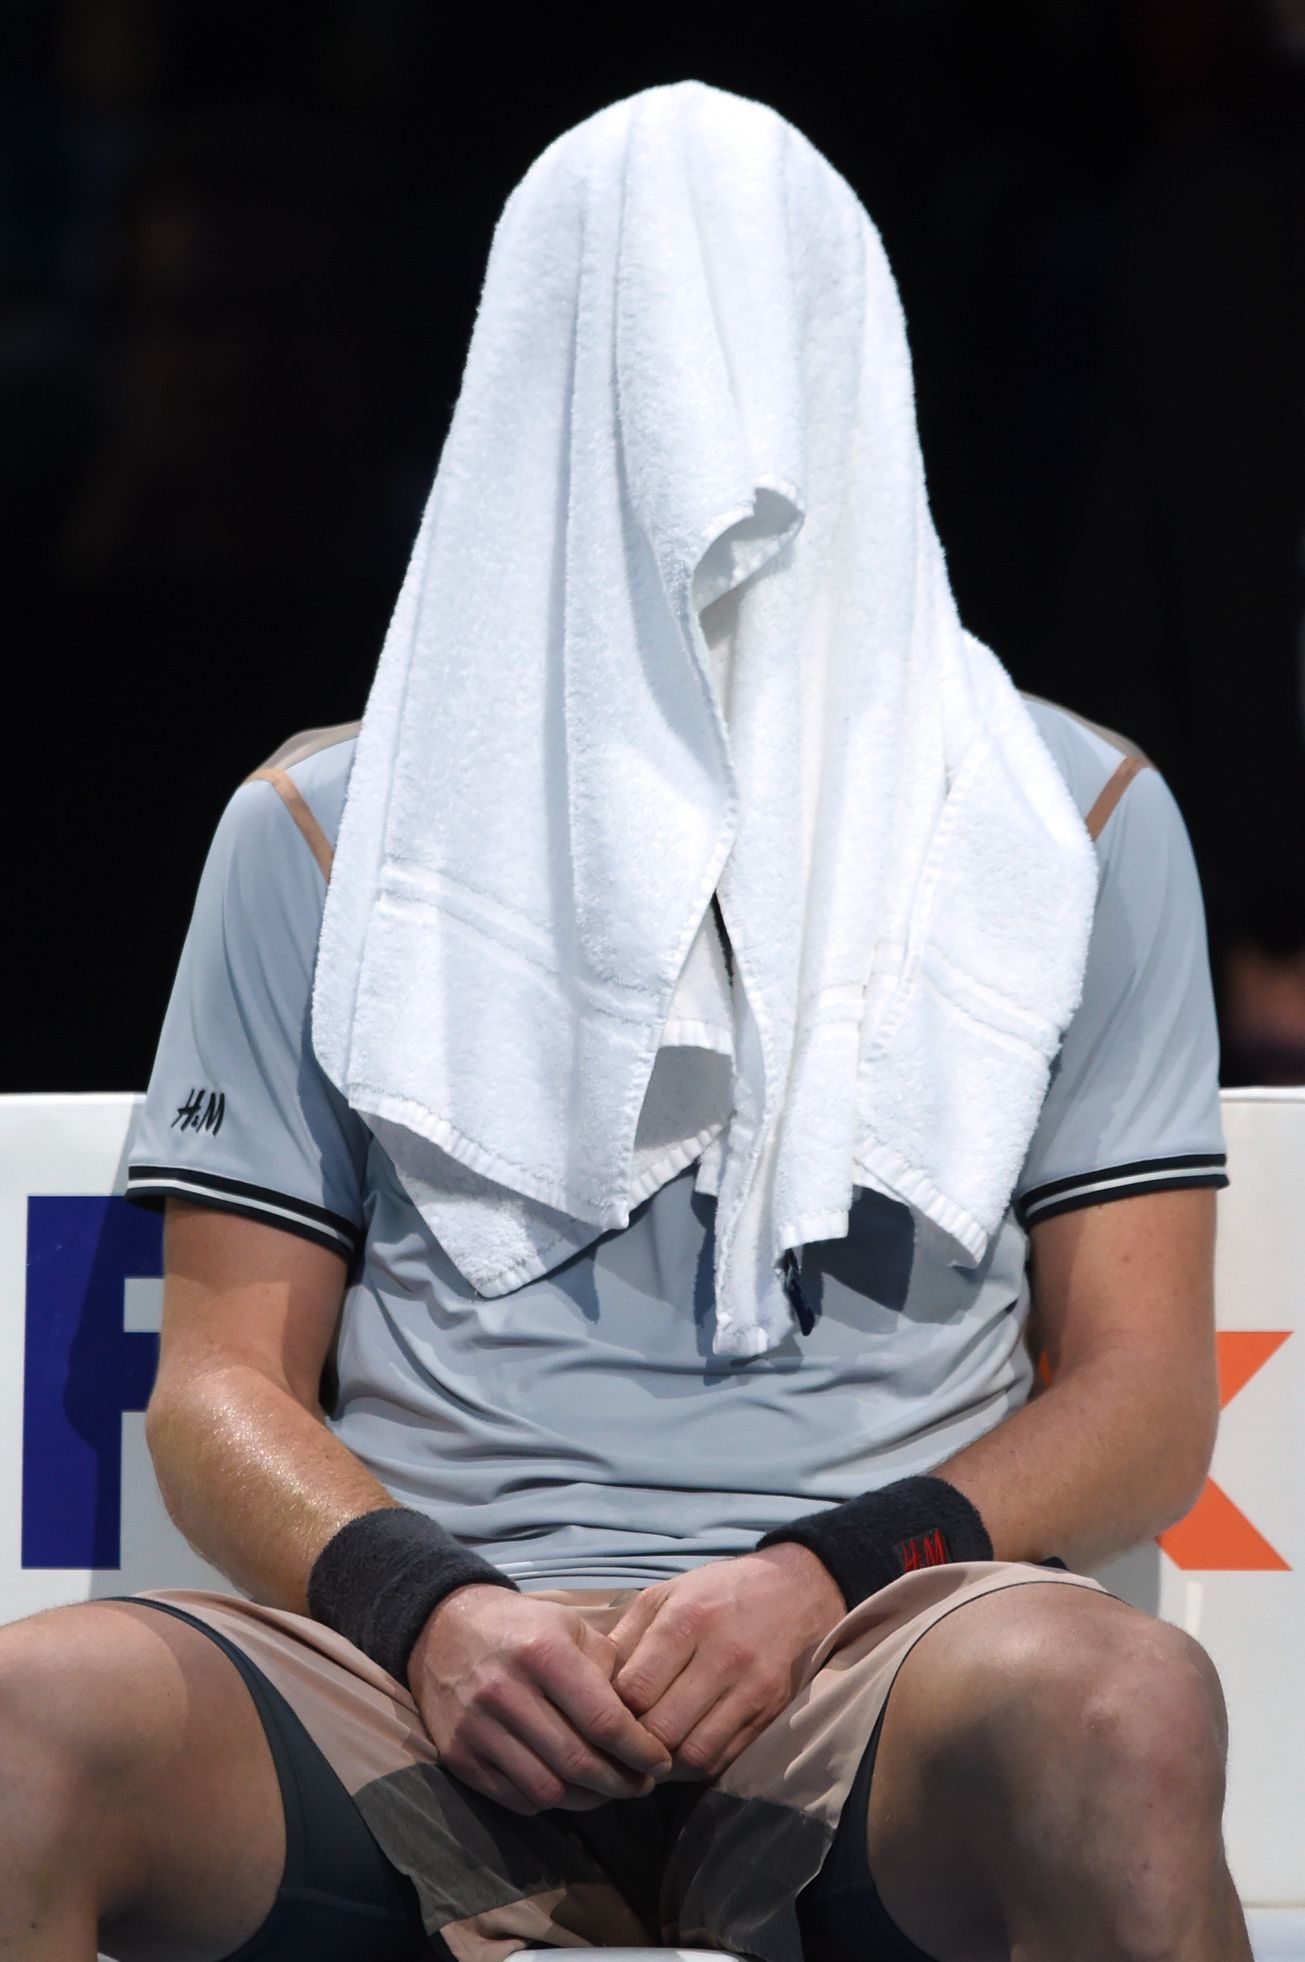 Turnaj mistrů 2015: Tomáš Berdych